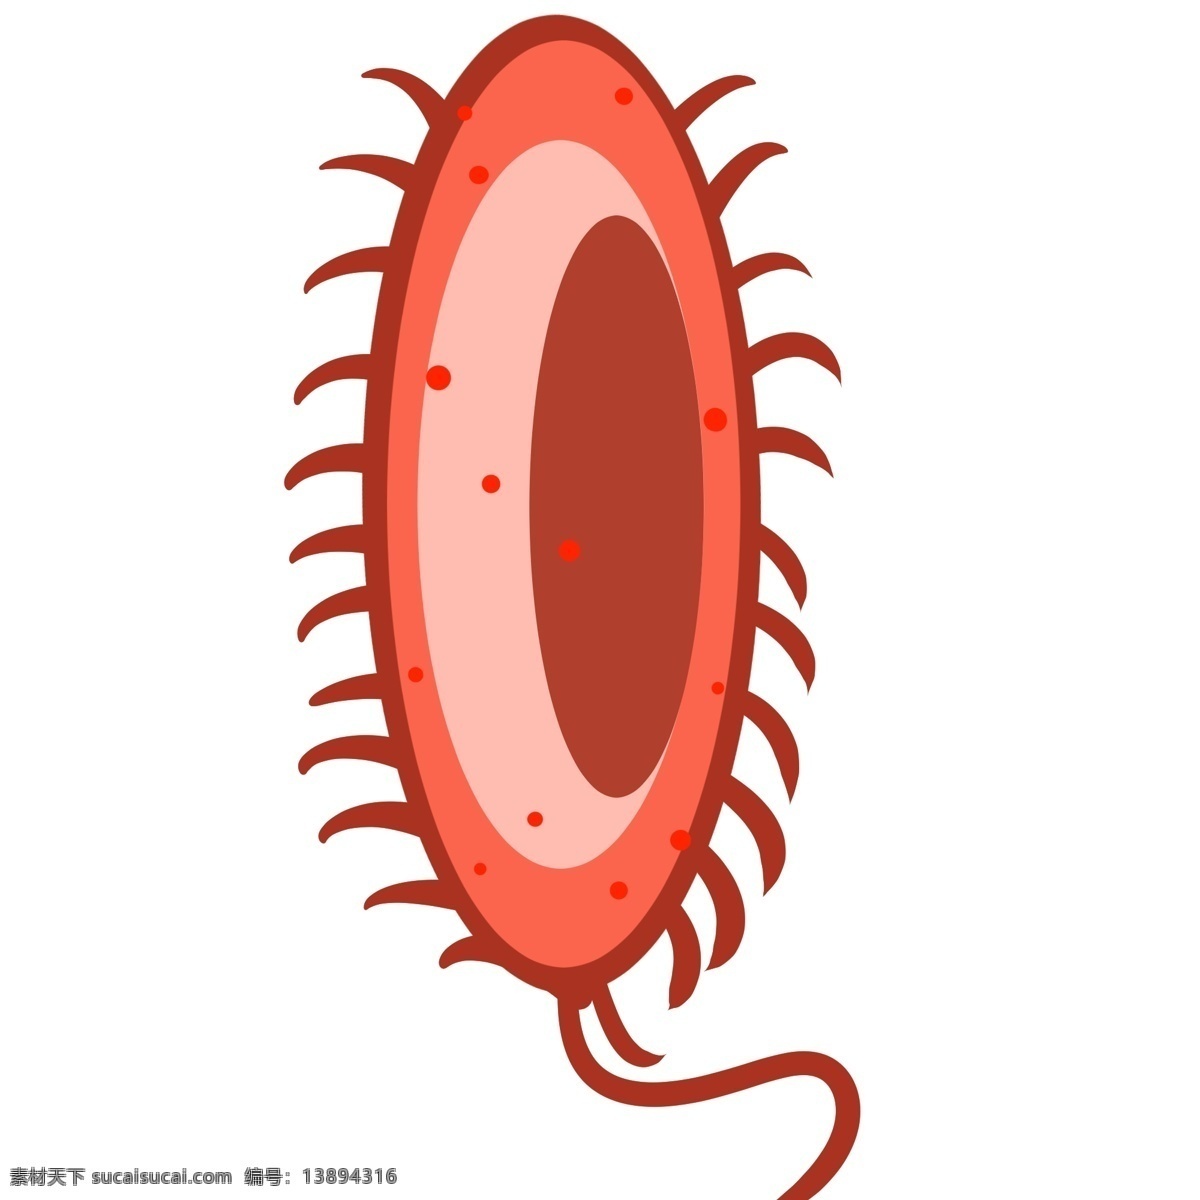 单眼 细菌 红色 插画 单眼细菌 红色细菌 病毒 病菌 红色病菌 卡通病菌插画